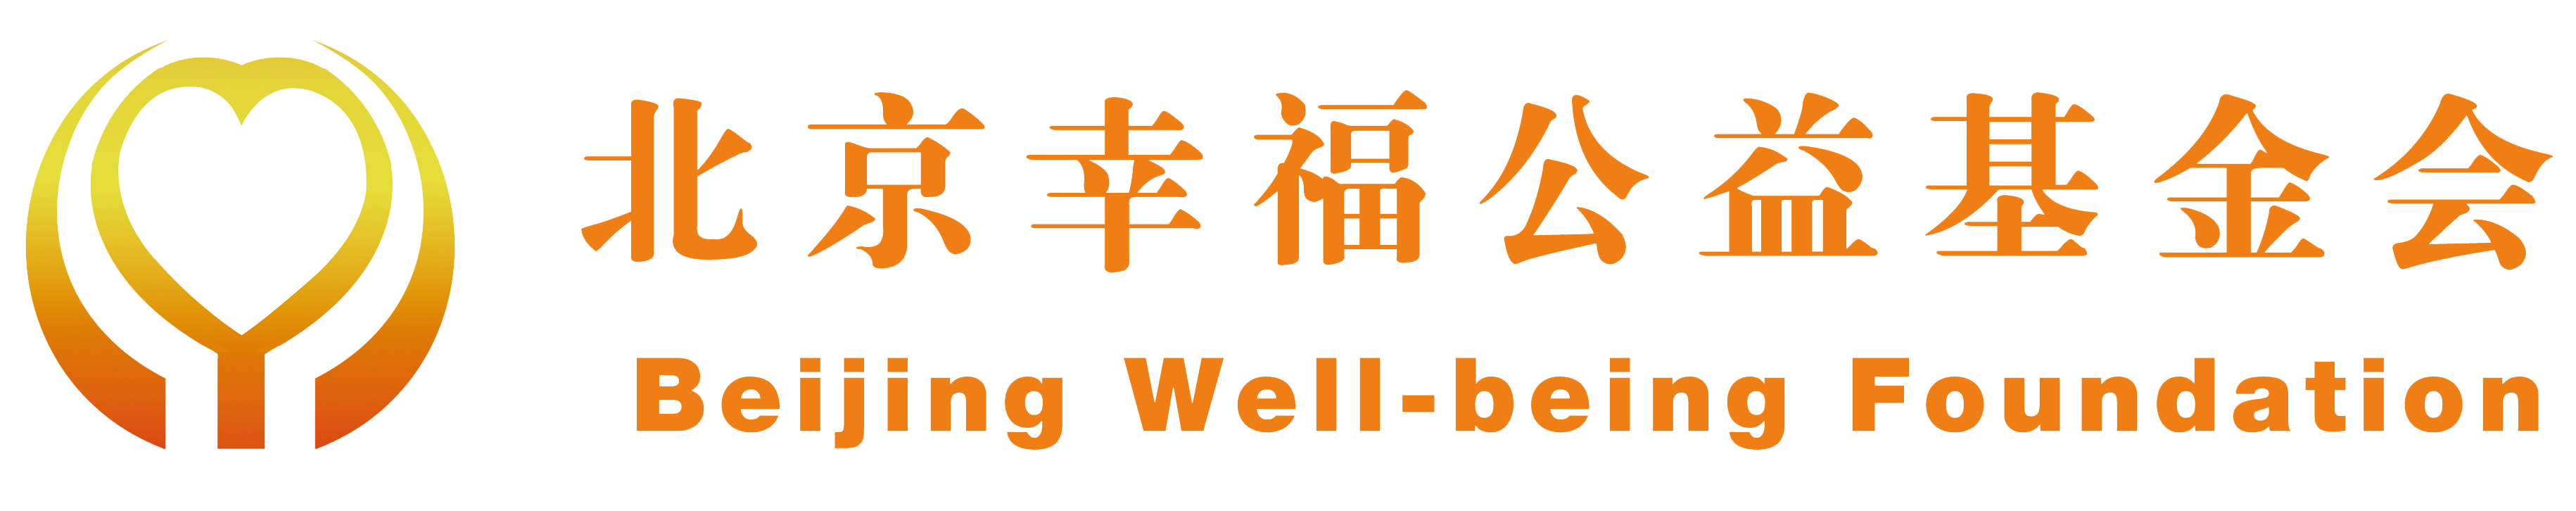 北京幸福基金会